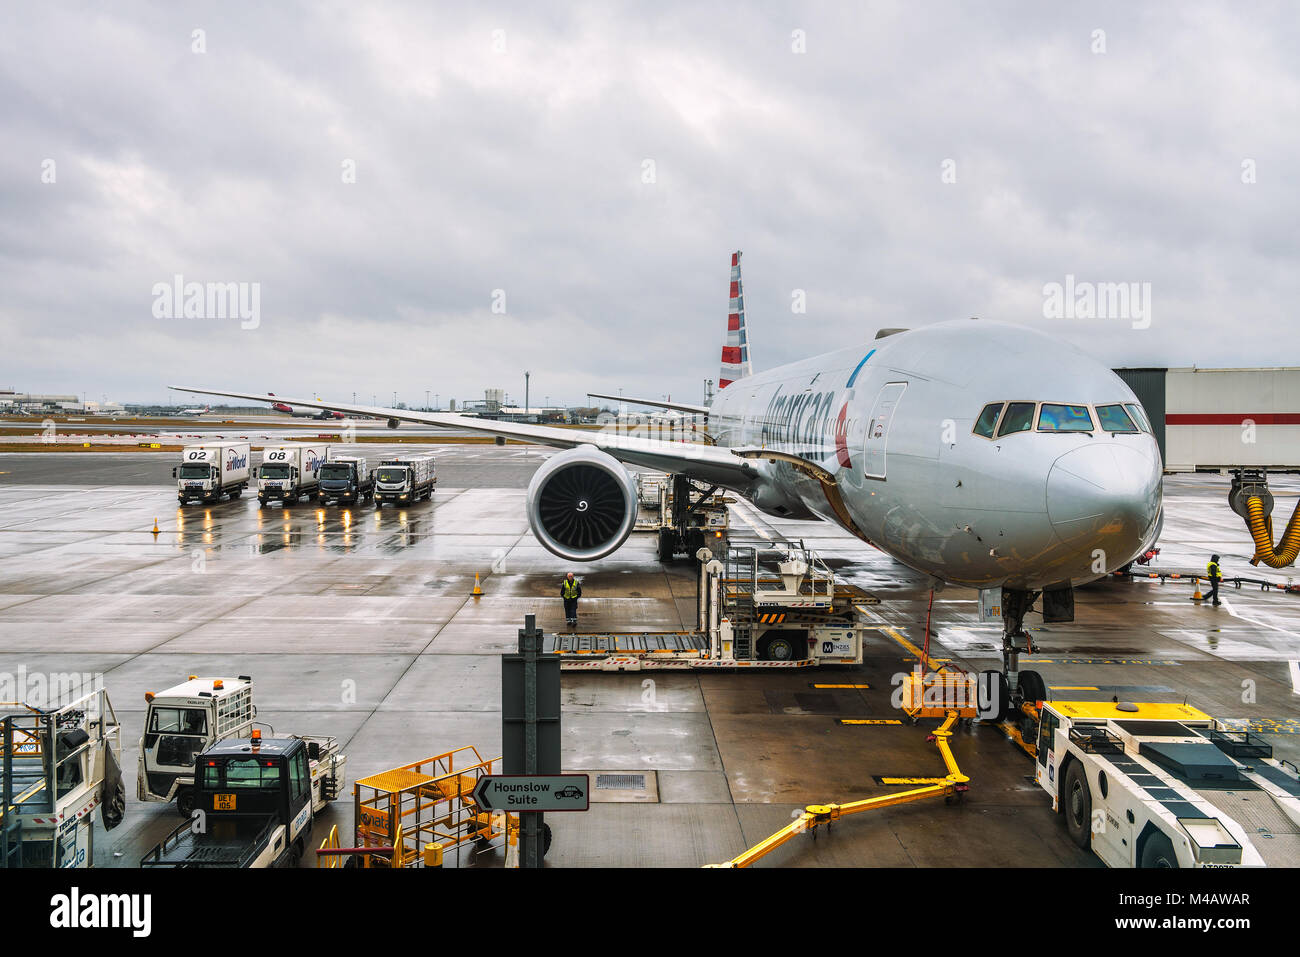 Flugzeug von American Airlines am Flughafen London Heathrow erreichbar Stockfoto